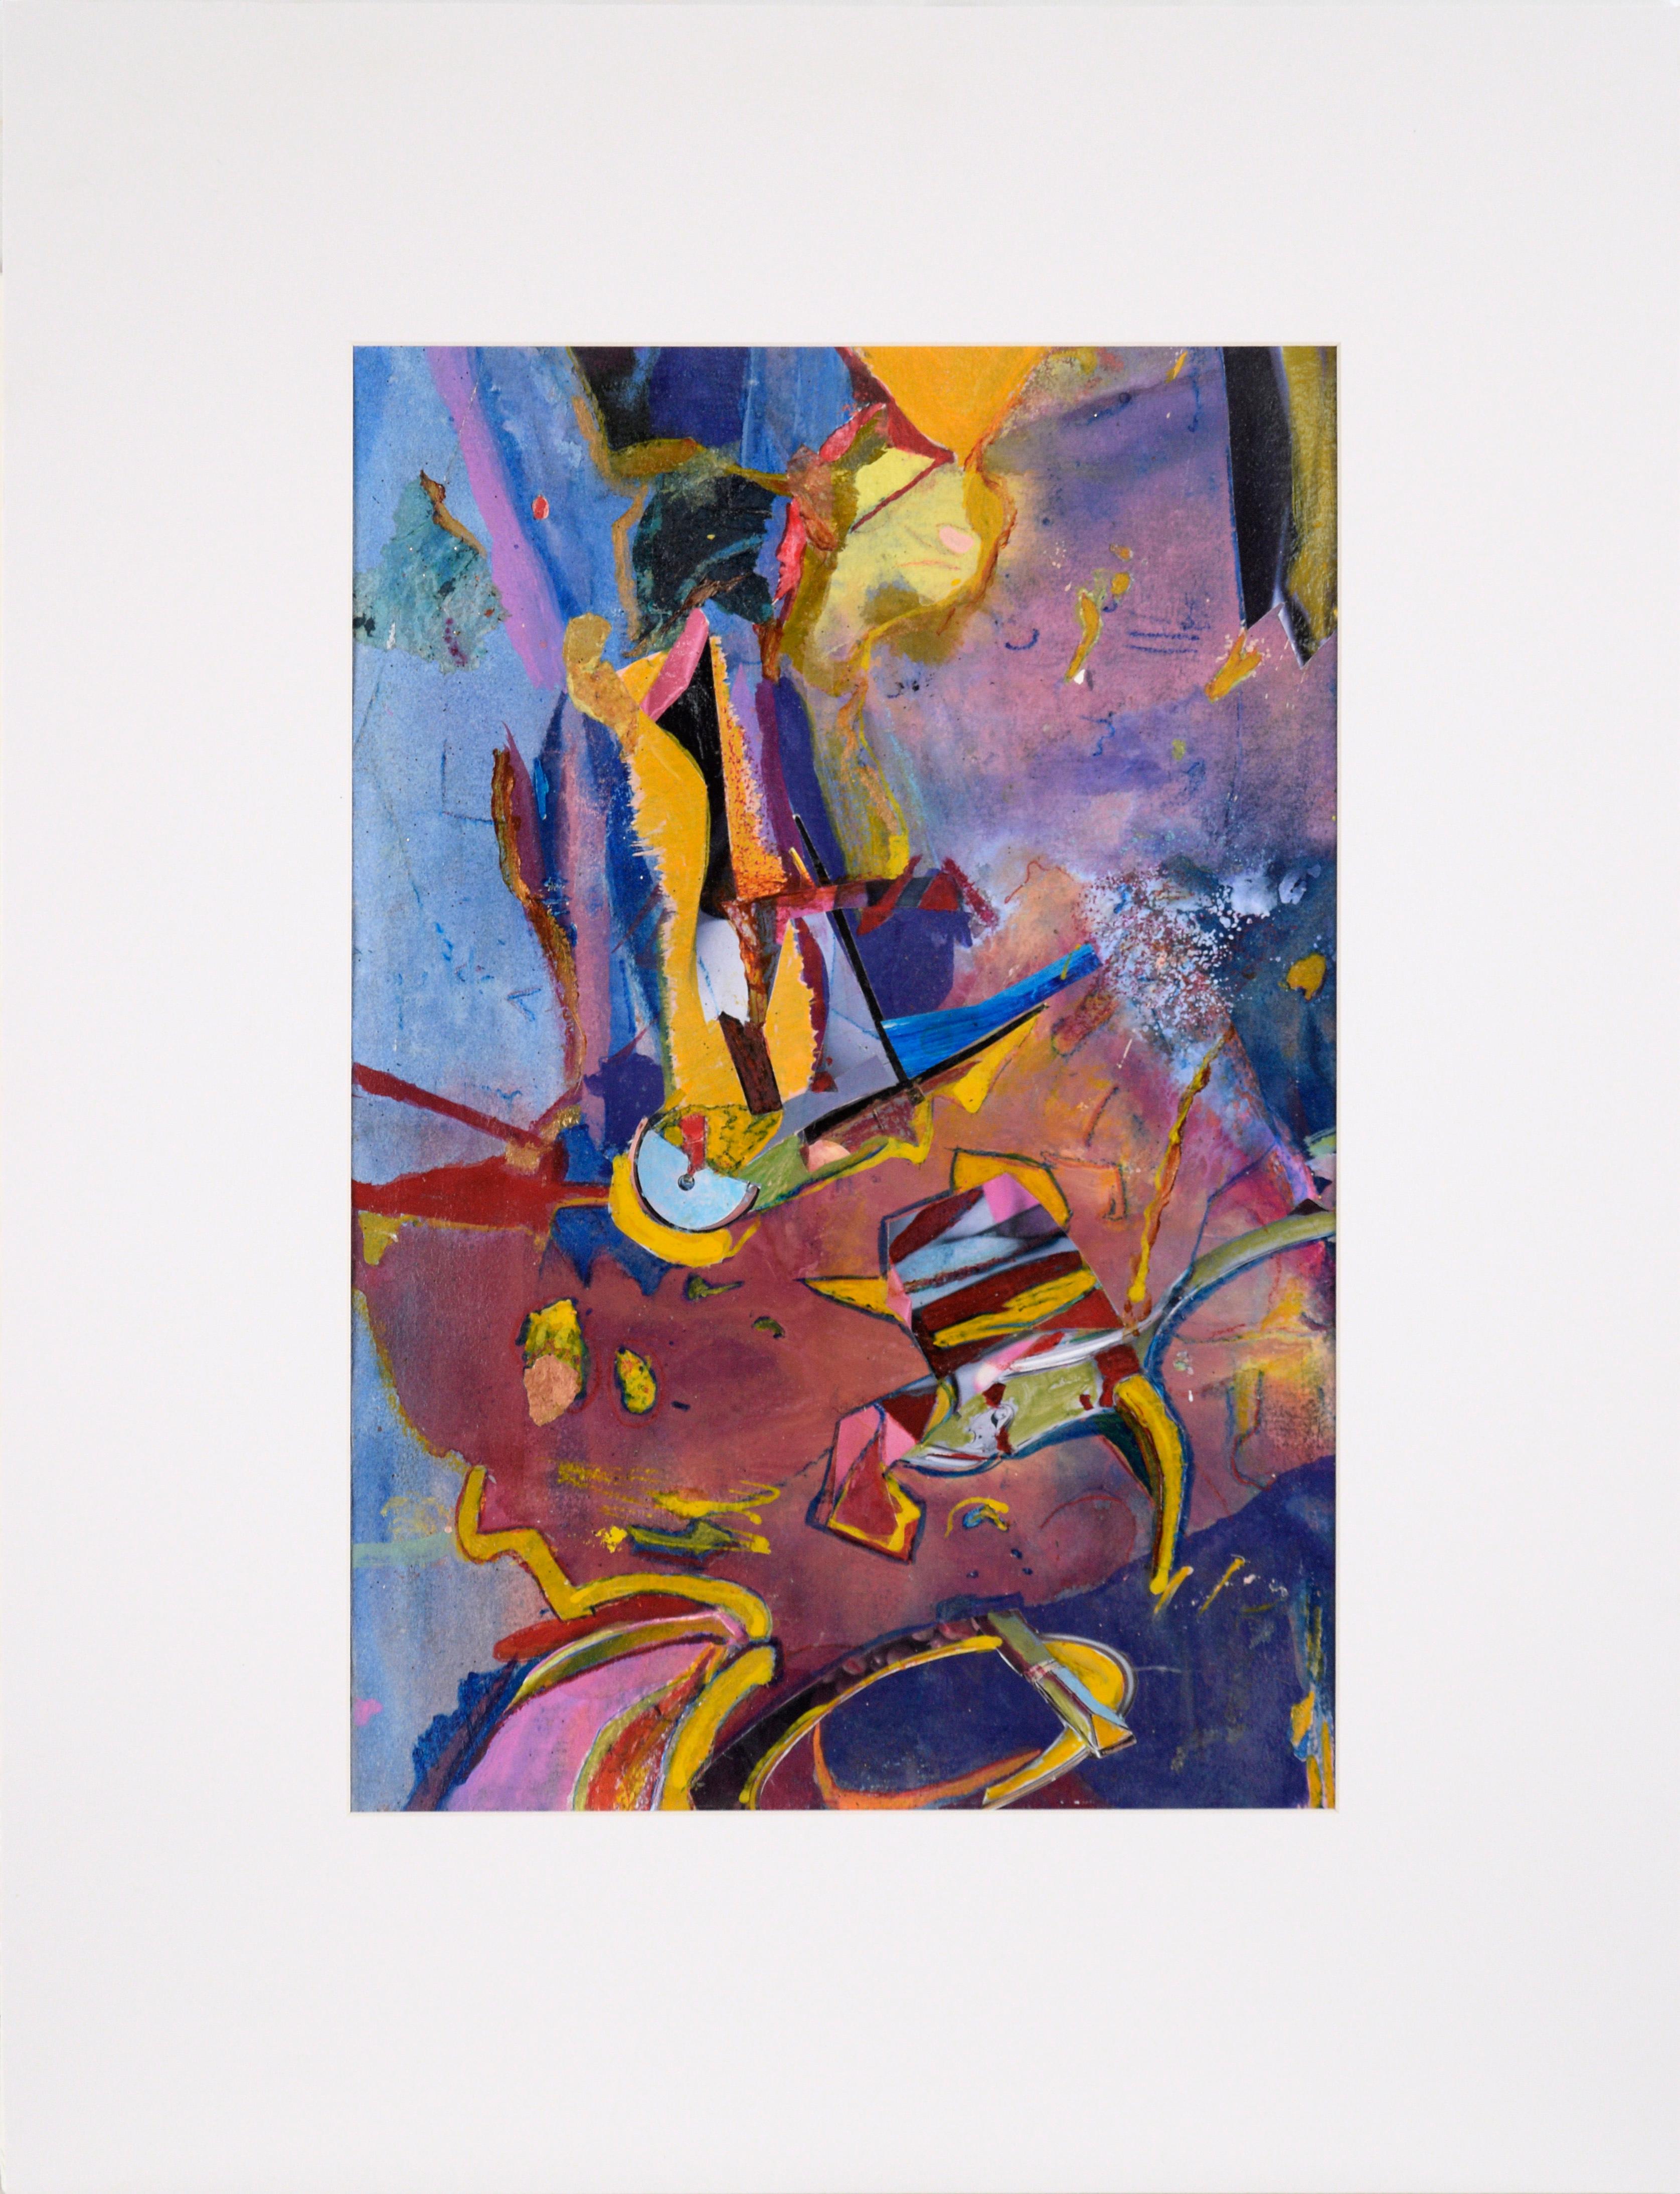 Abstract Painting Jennie Rafton - Tableau de carnaval abstrait en bleu, magenta et jaune, huile et collage sur papier